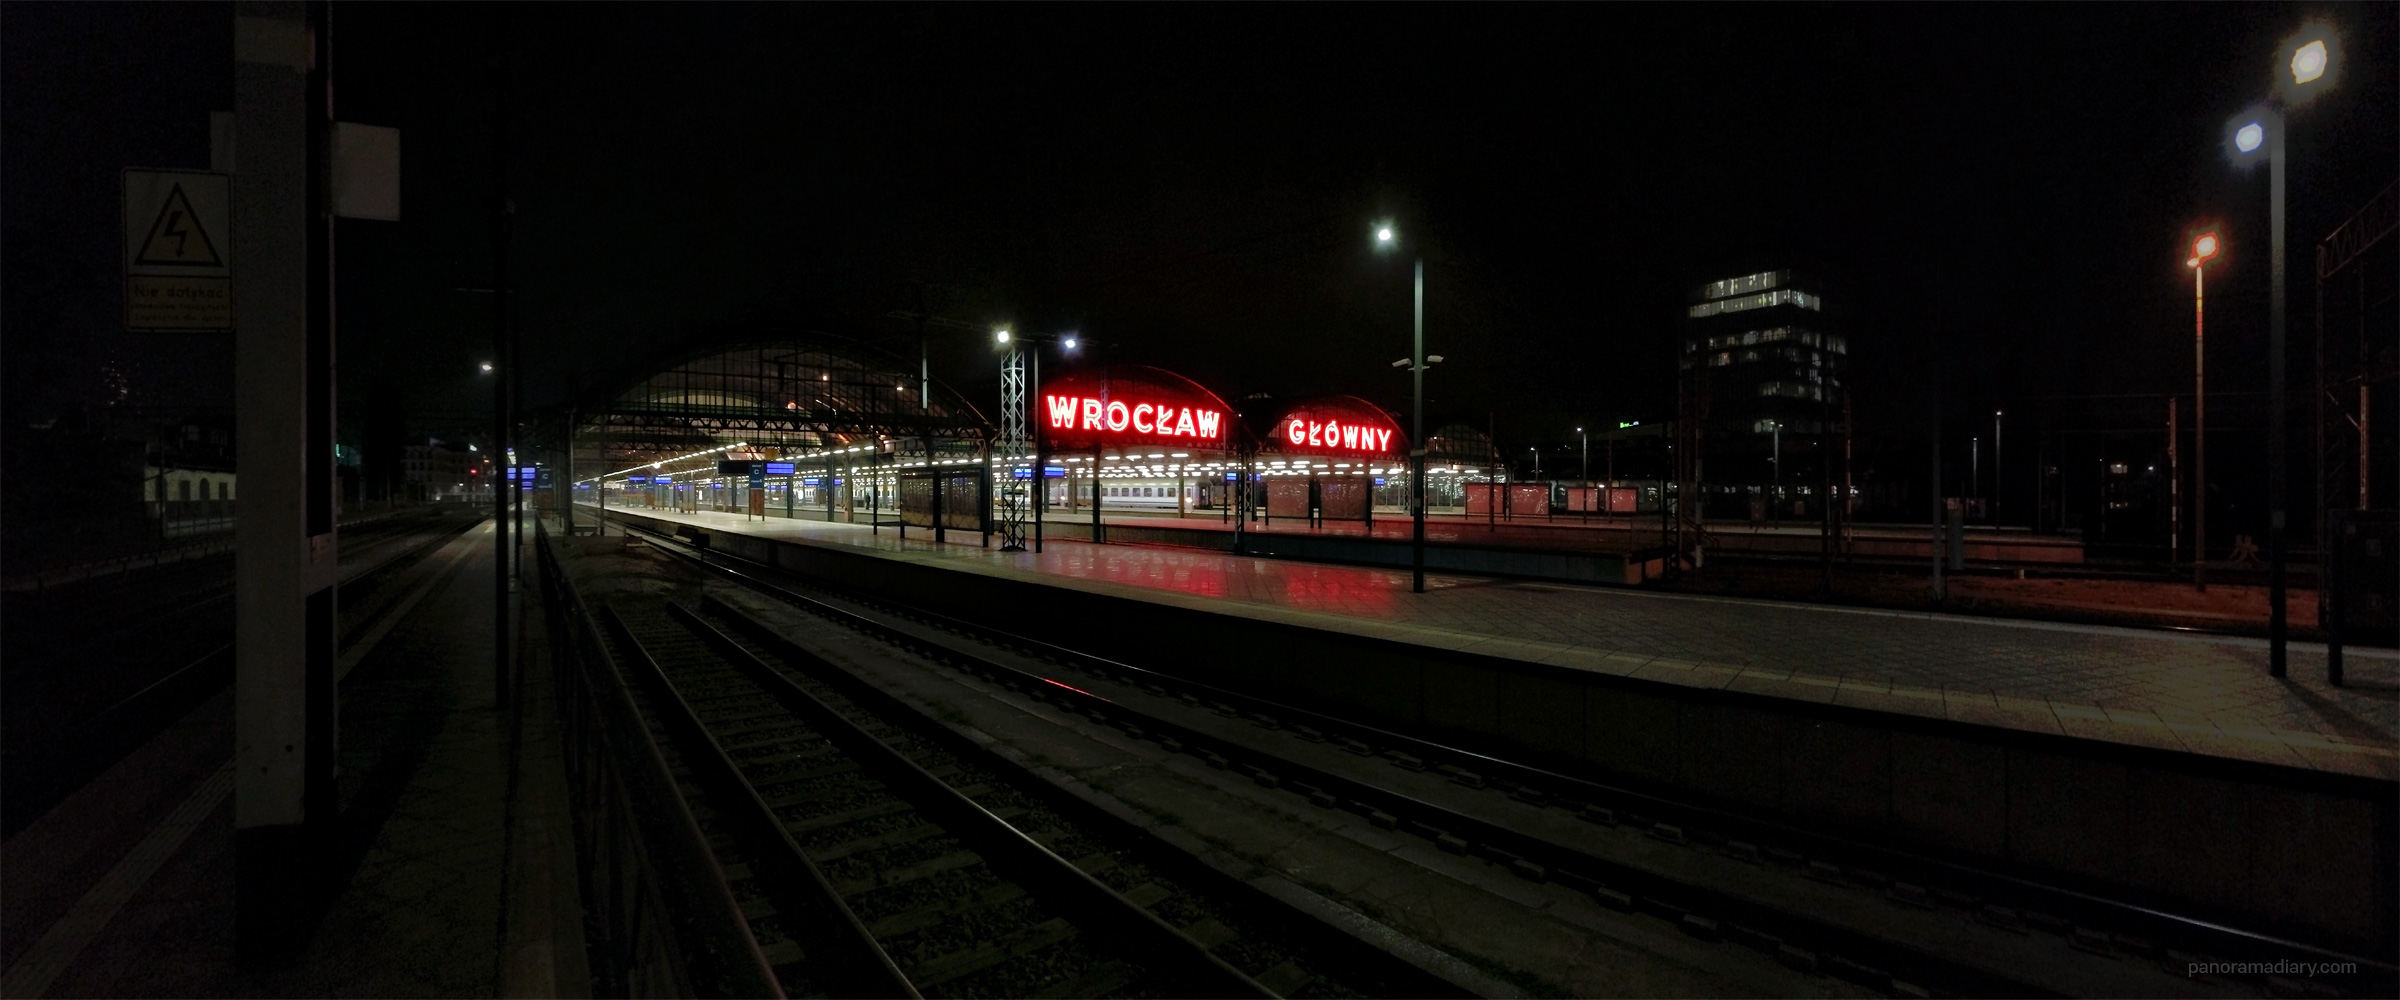 Wrocław Główny train station by night | PANORAMA DIARY